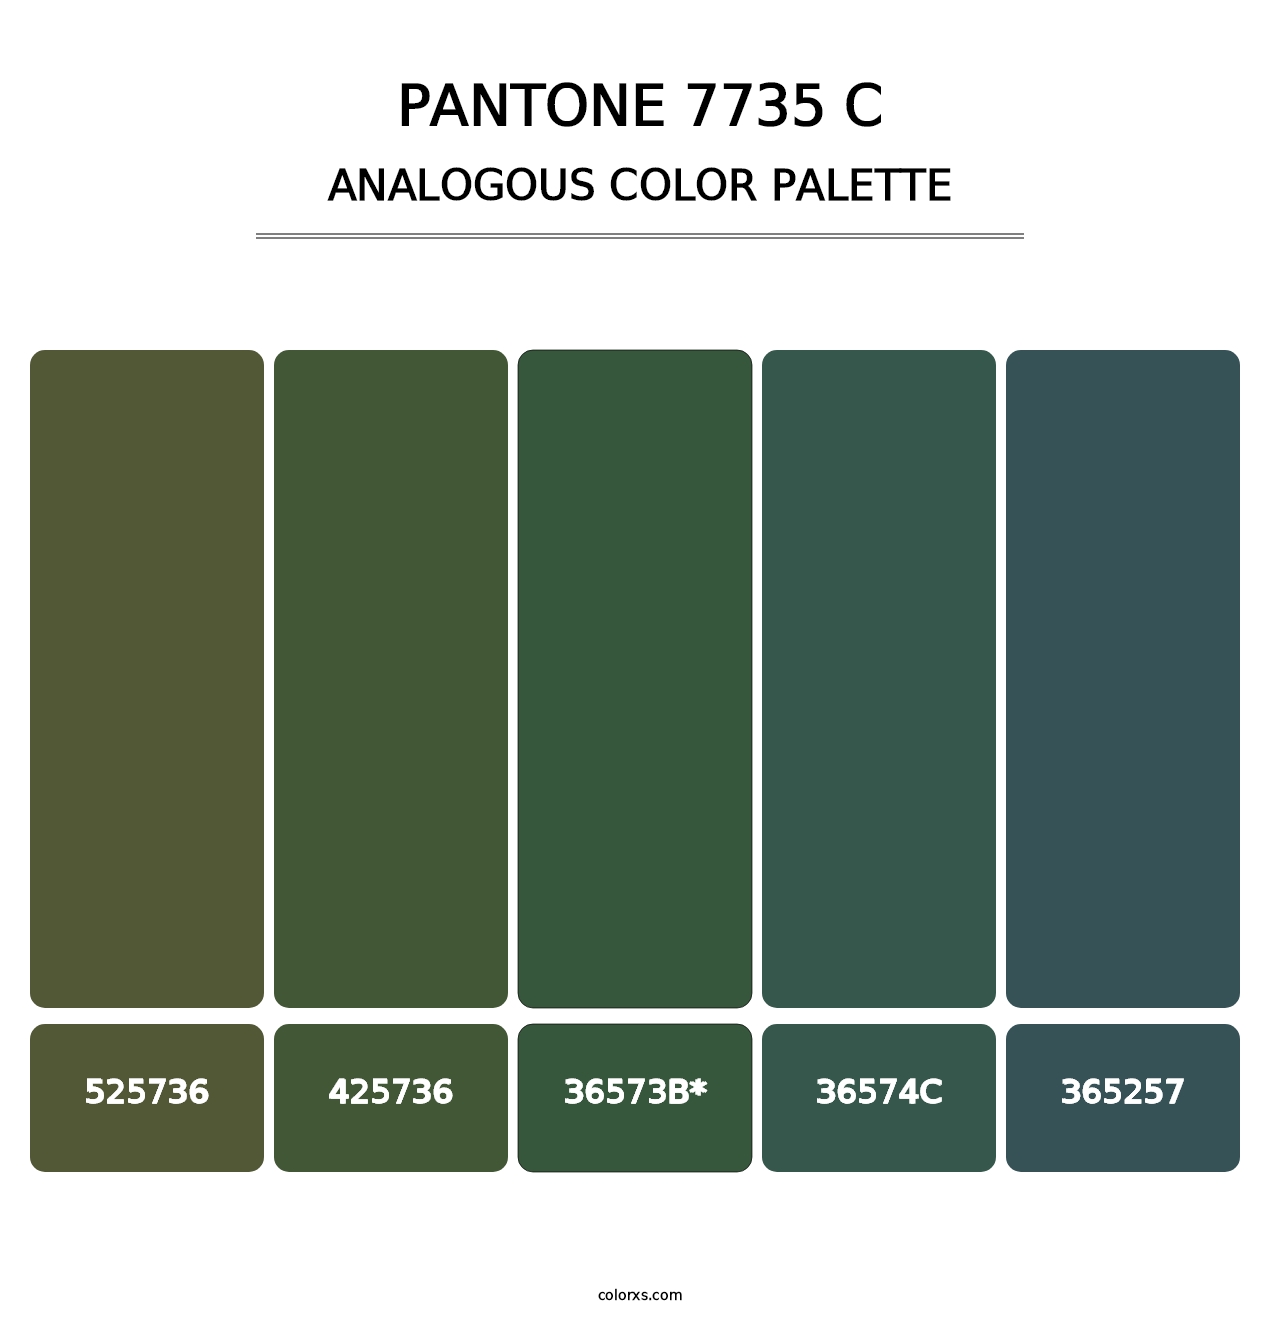 PANTONE 7735 C - Analogous Color Palette